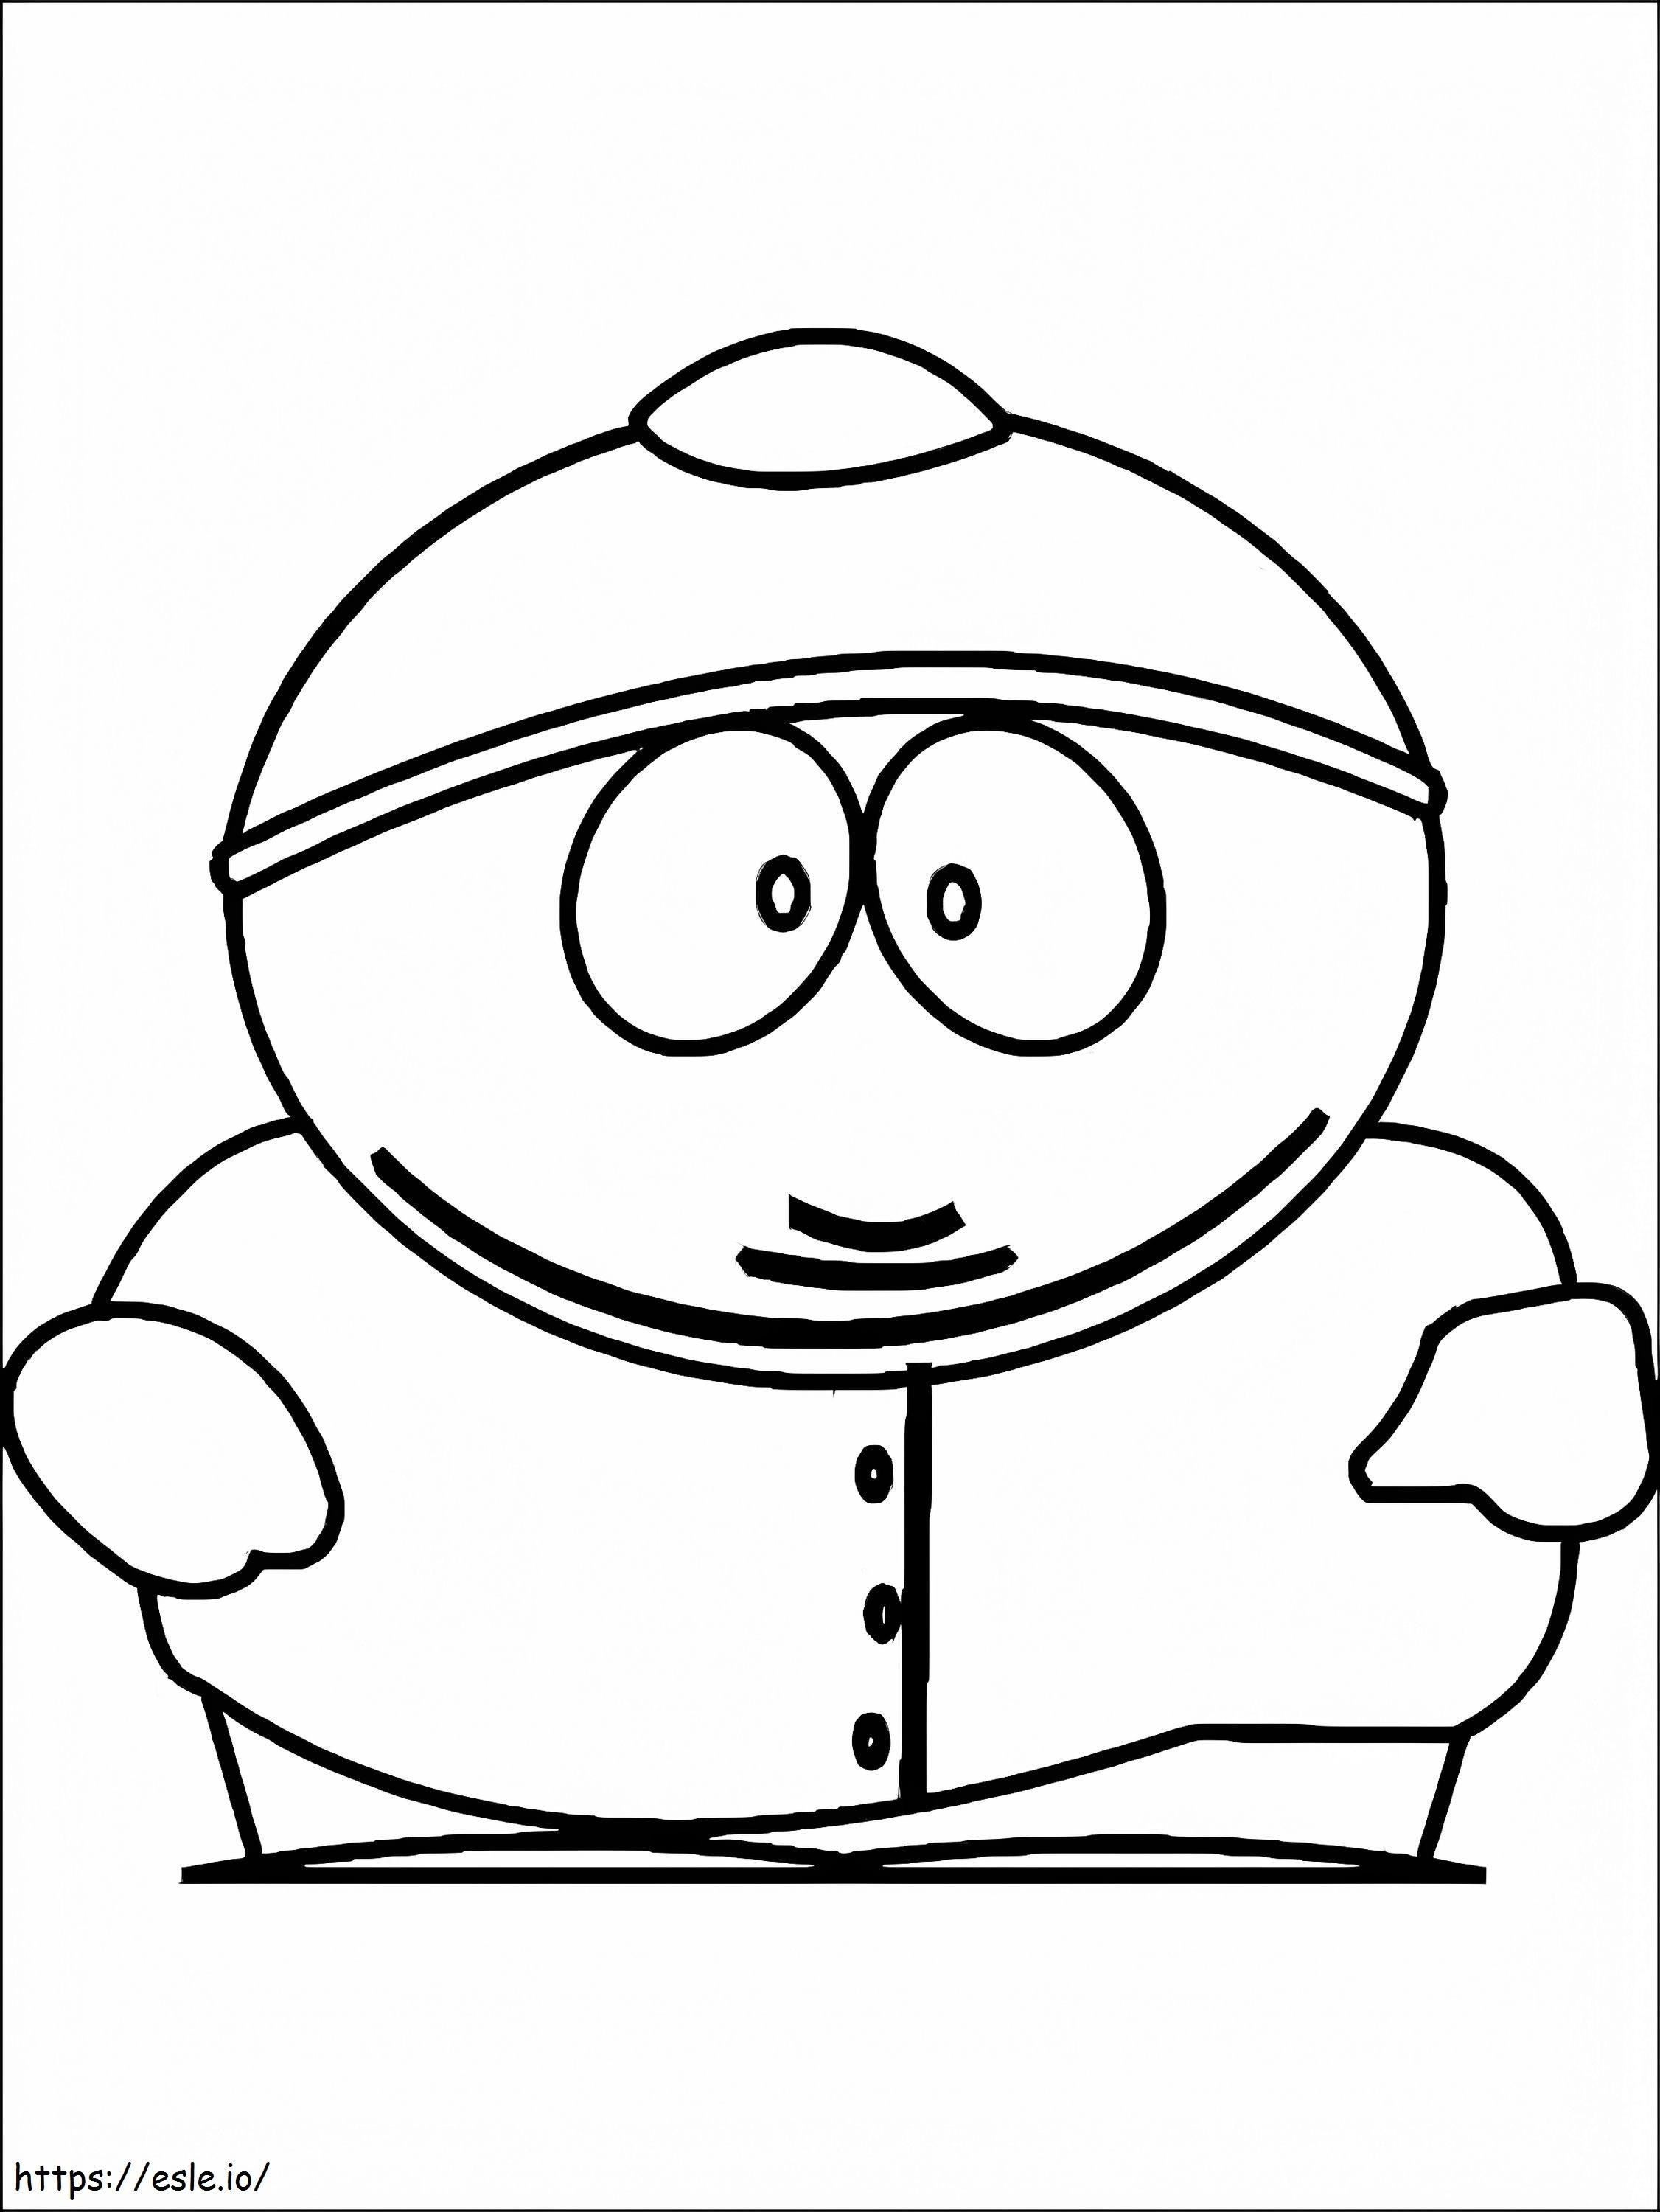 Coloriage Eric Cartman De South Park à imprimer dessin